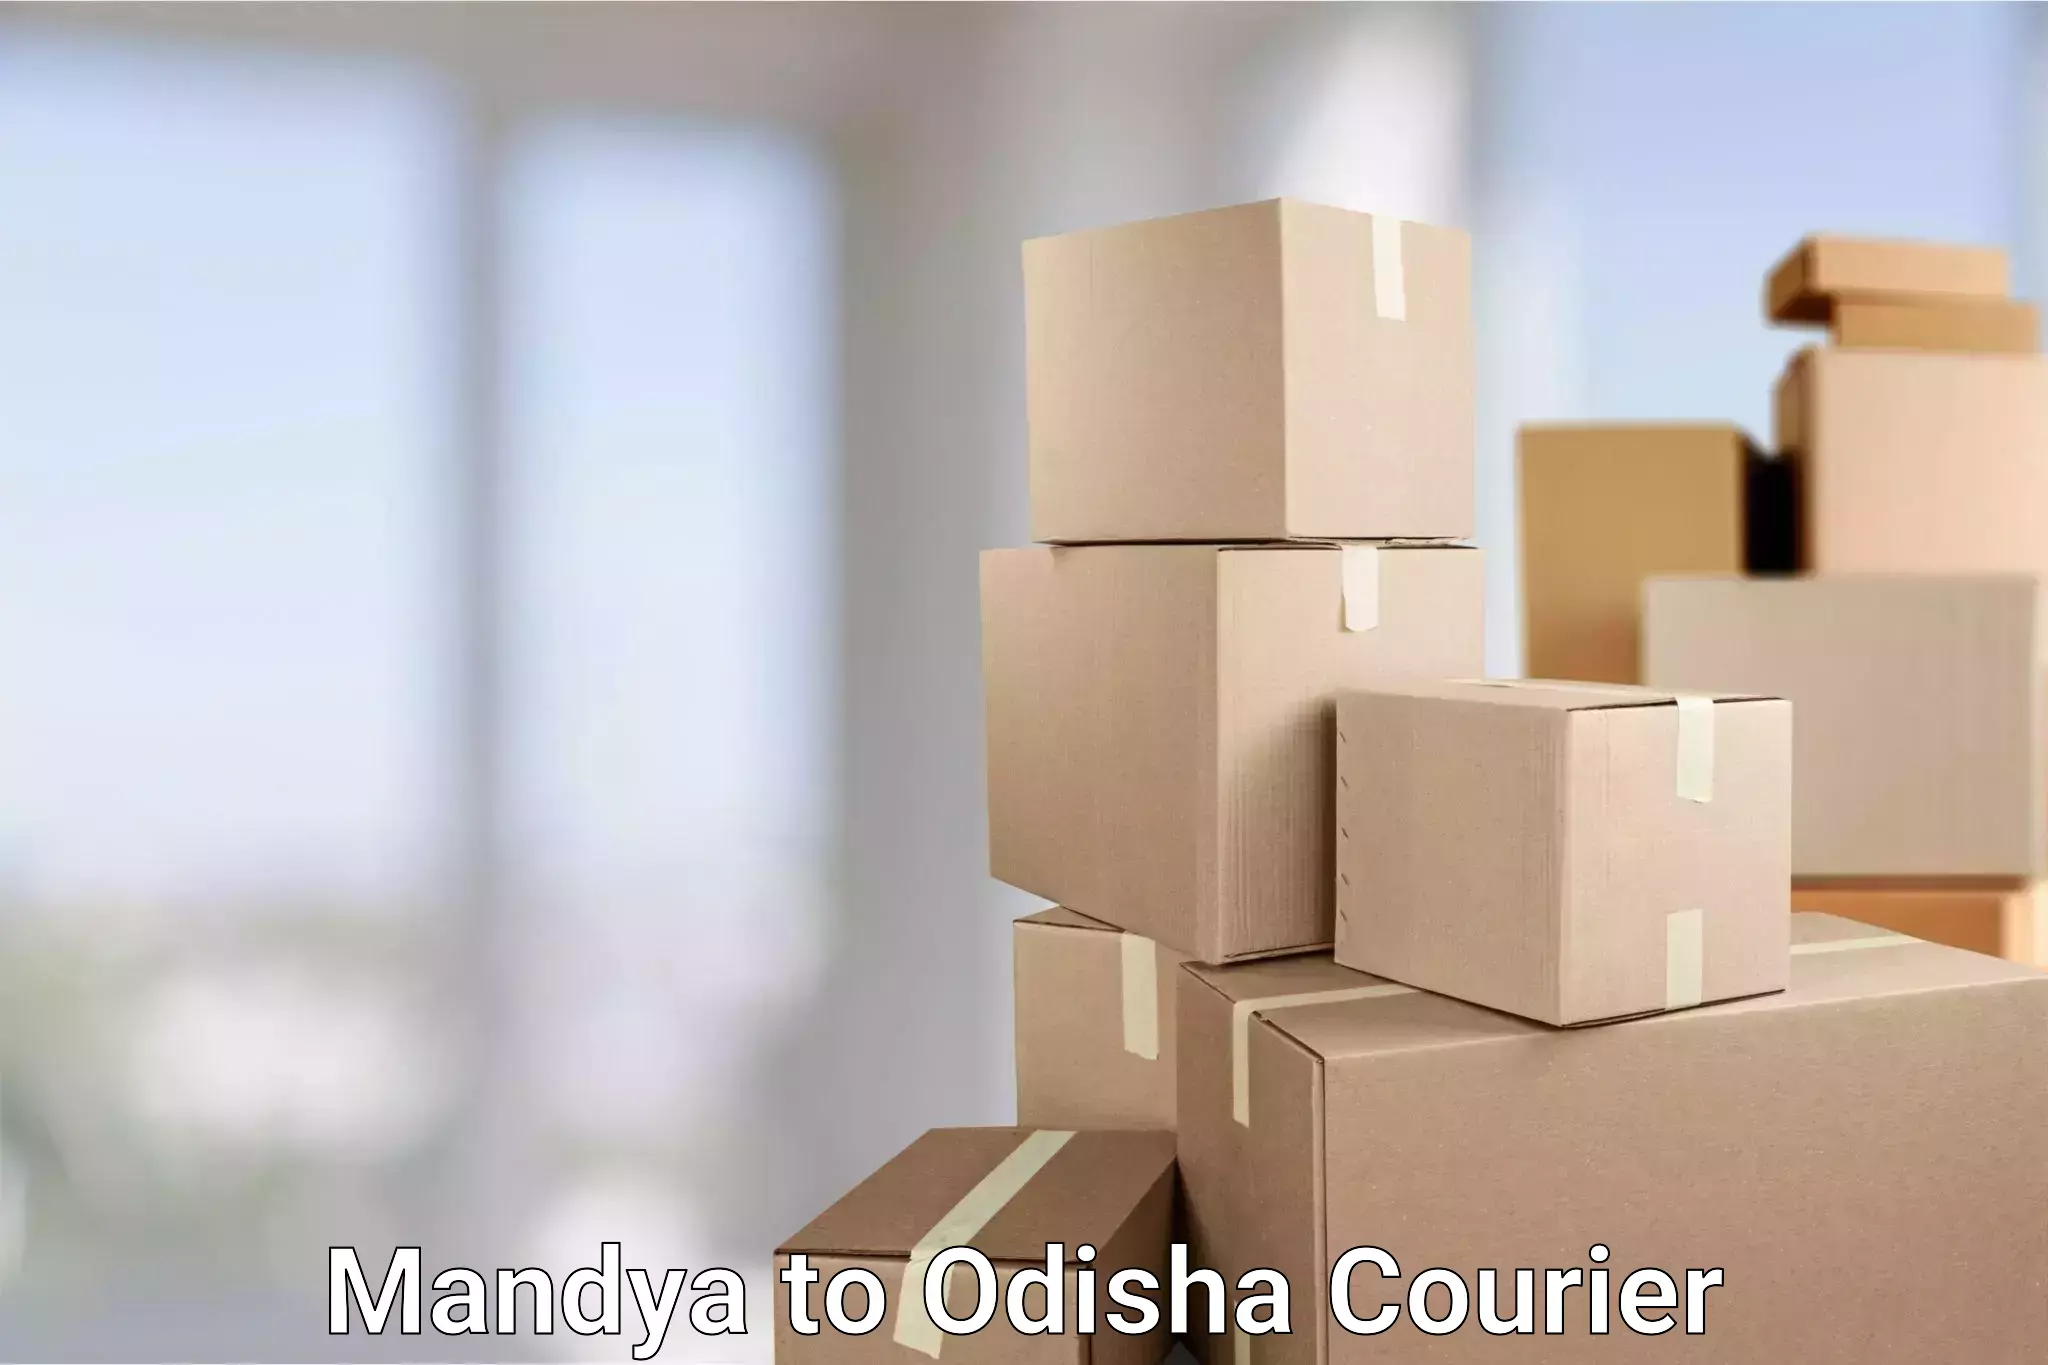 Affordable shipping rates Mandya to Baripada